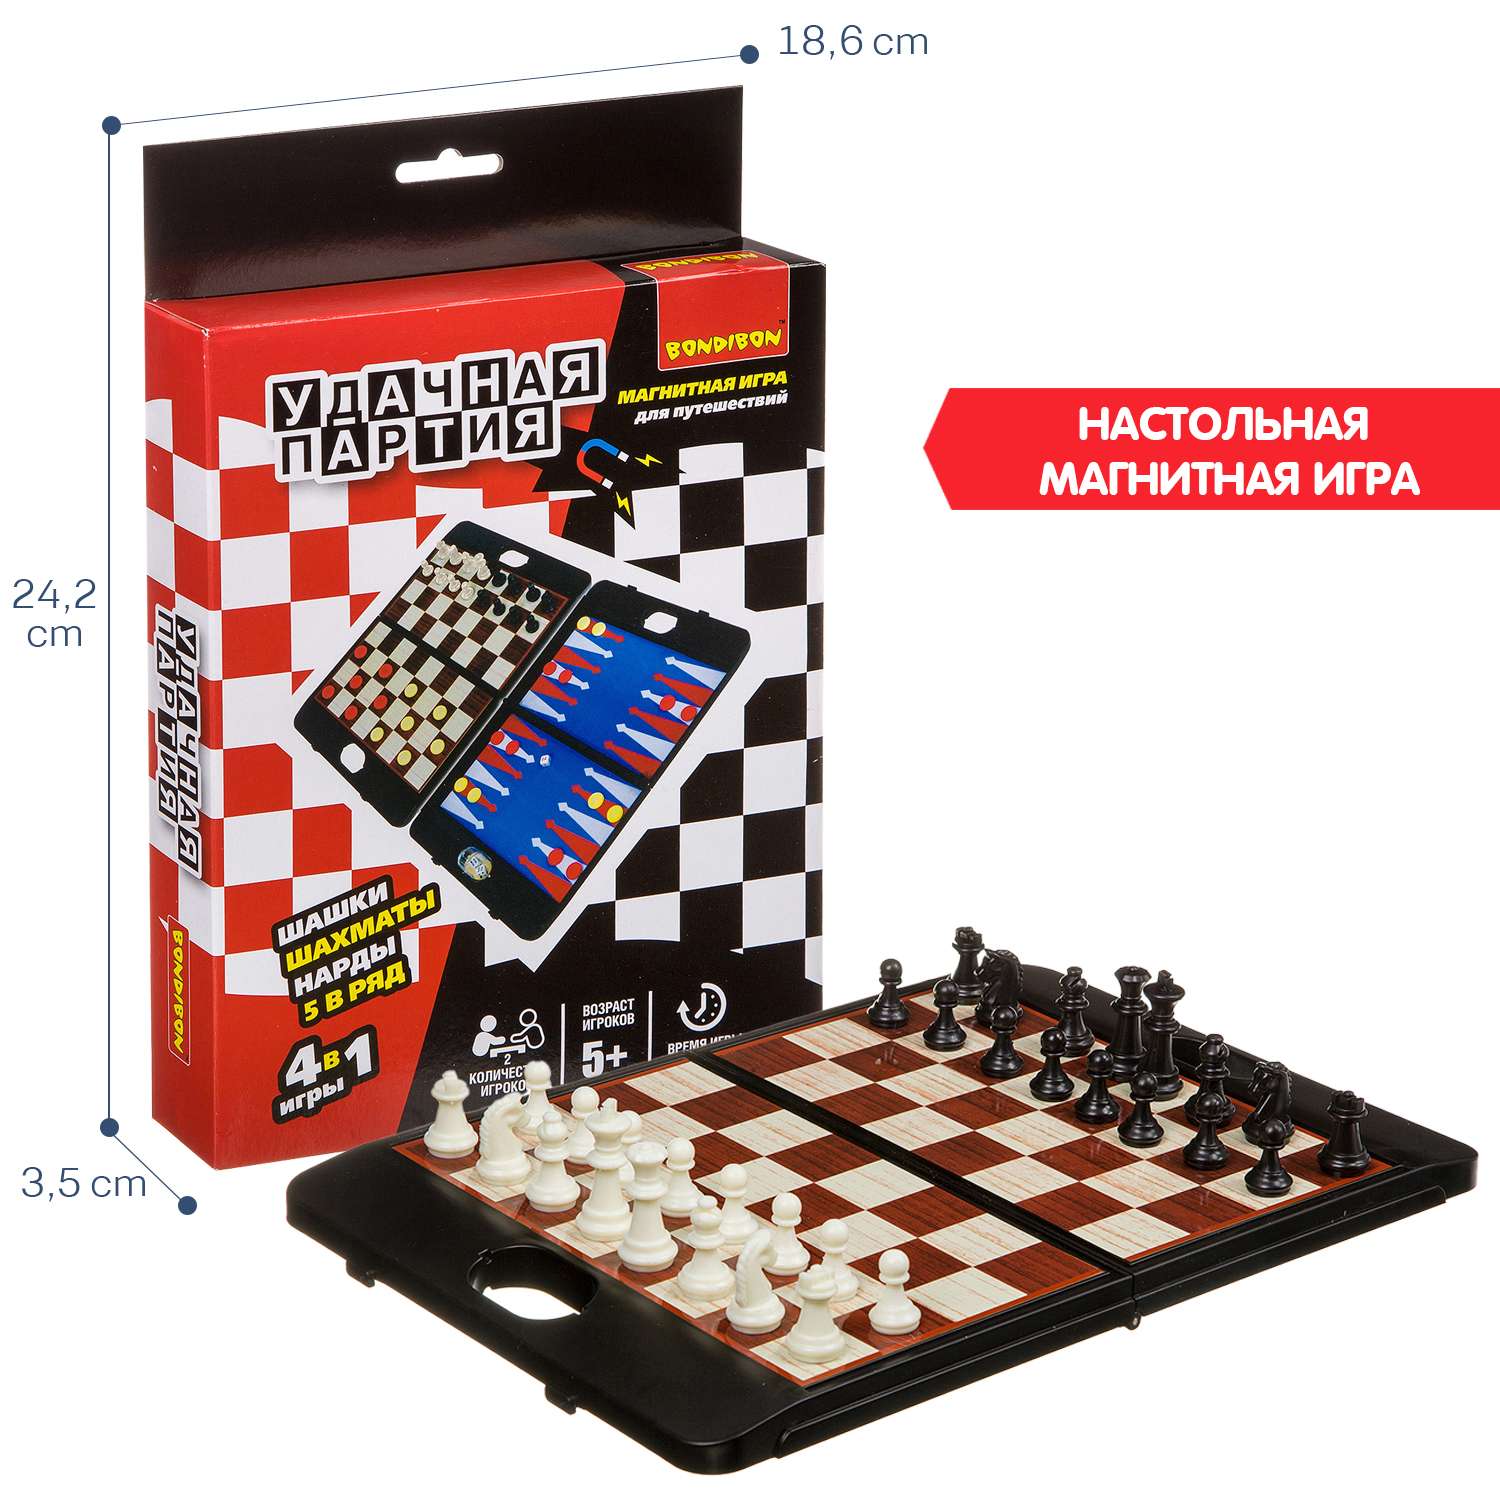 Настольная развивающая игра BONDIBON 4 в 1 Шахматы шашки нарды 5 в ряд серия Удачная партия - фото 6